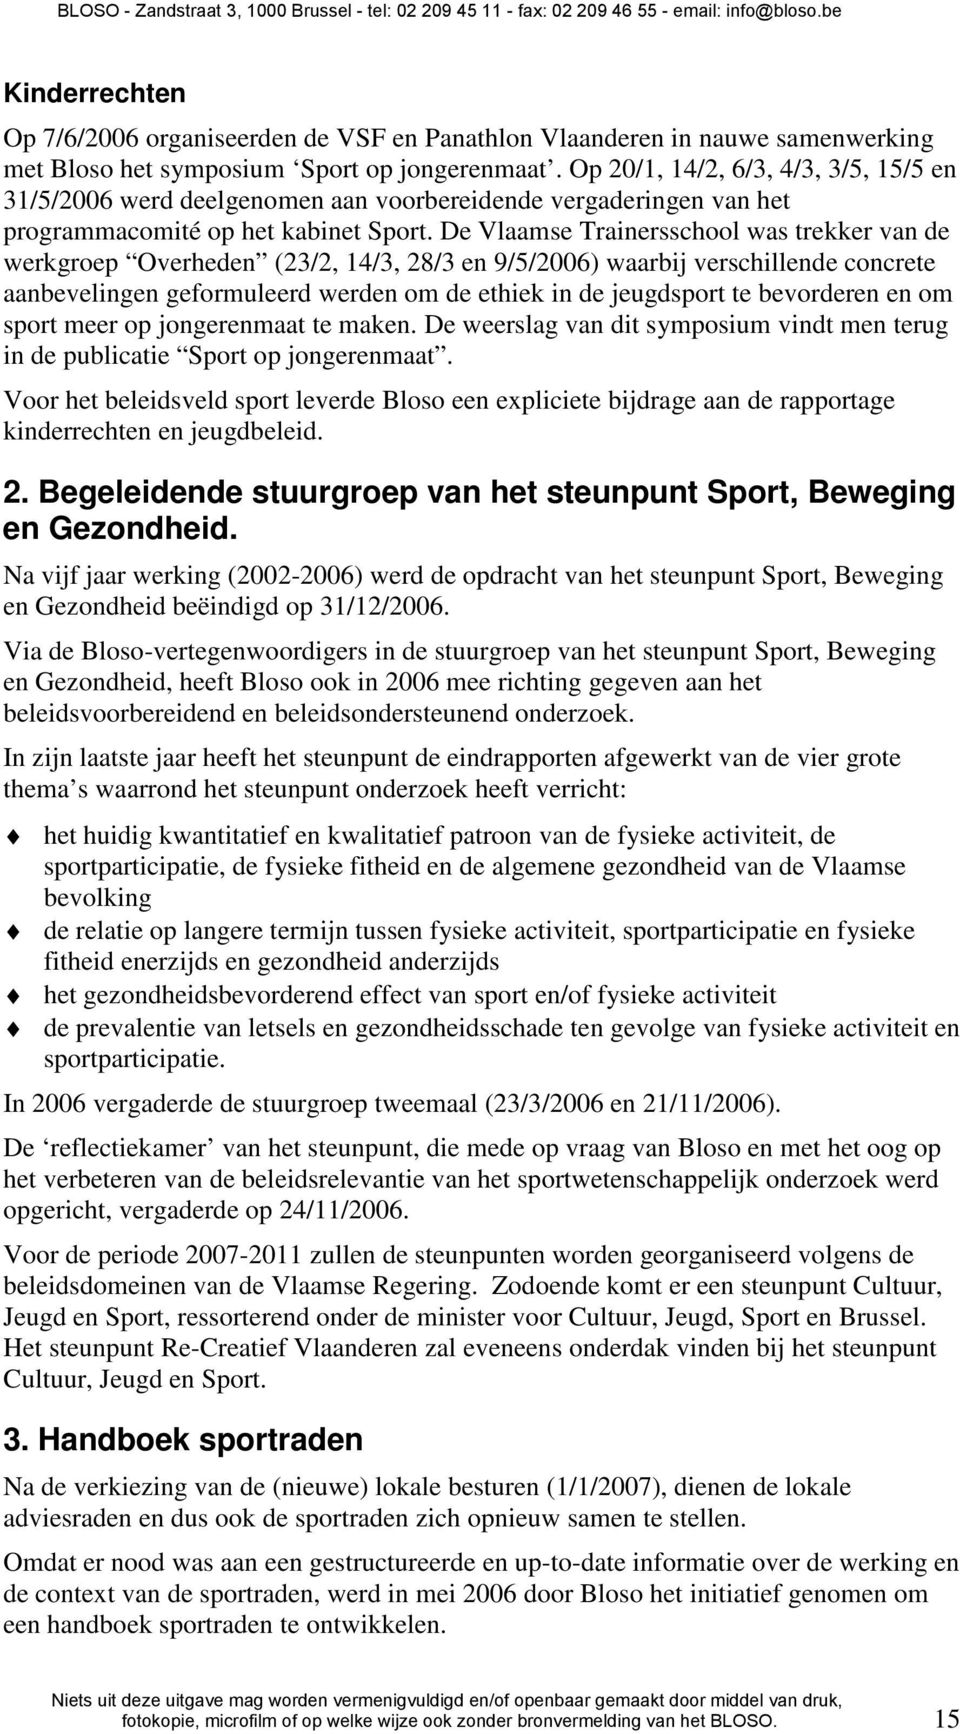 De Vlaamse Trainersschool was trekker van de werkgroep Overheden (23/2, 14/3, 28/3 en 9/5/2006) waarbij verschillende concrete aanbevelingen geformuleerd werden om de ethiek in de jeugdsport te